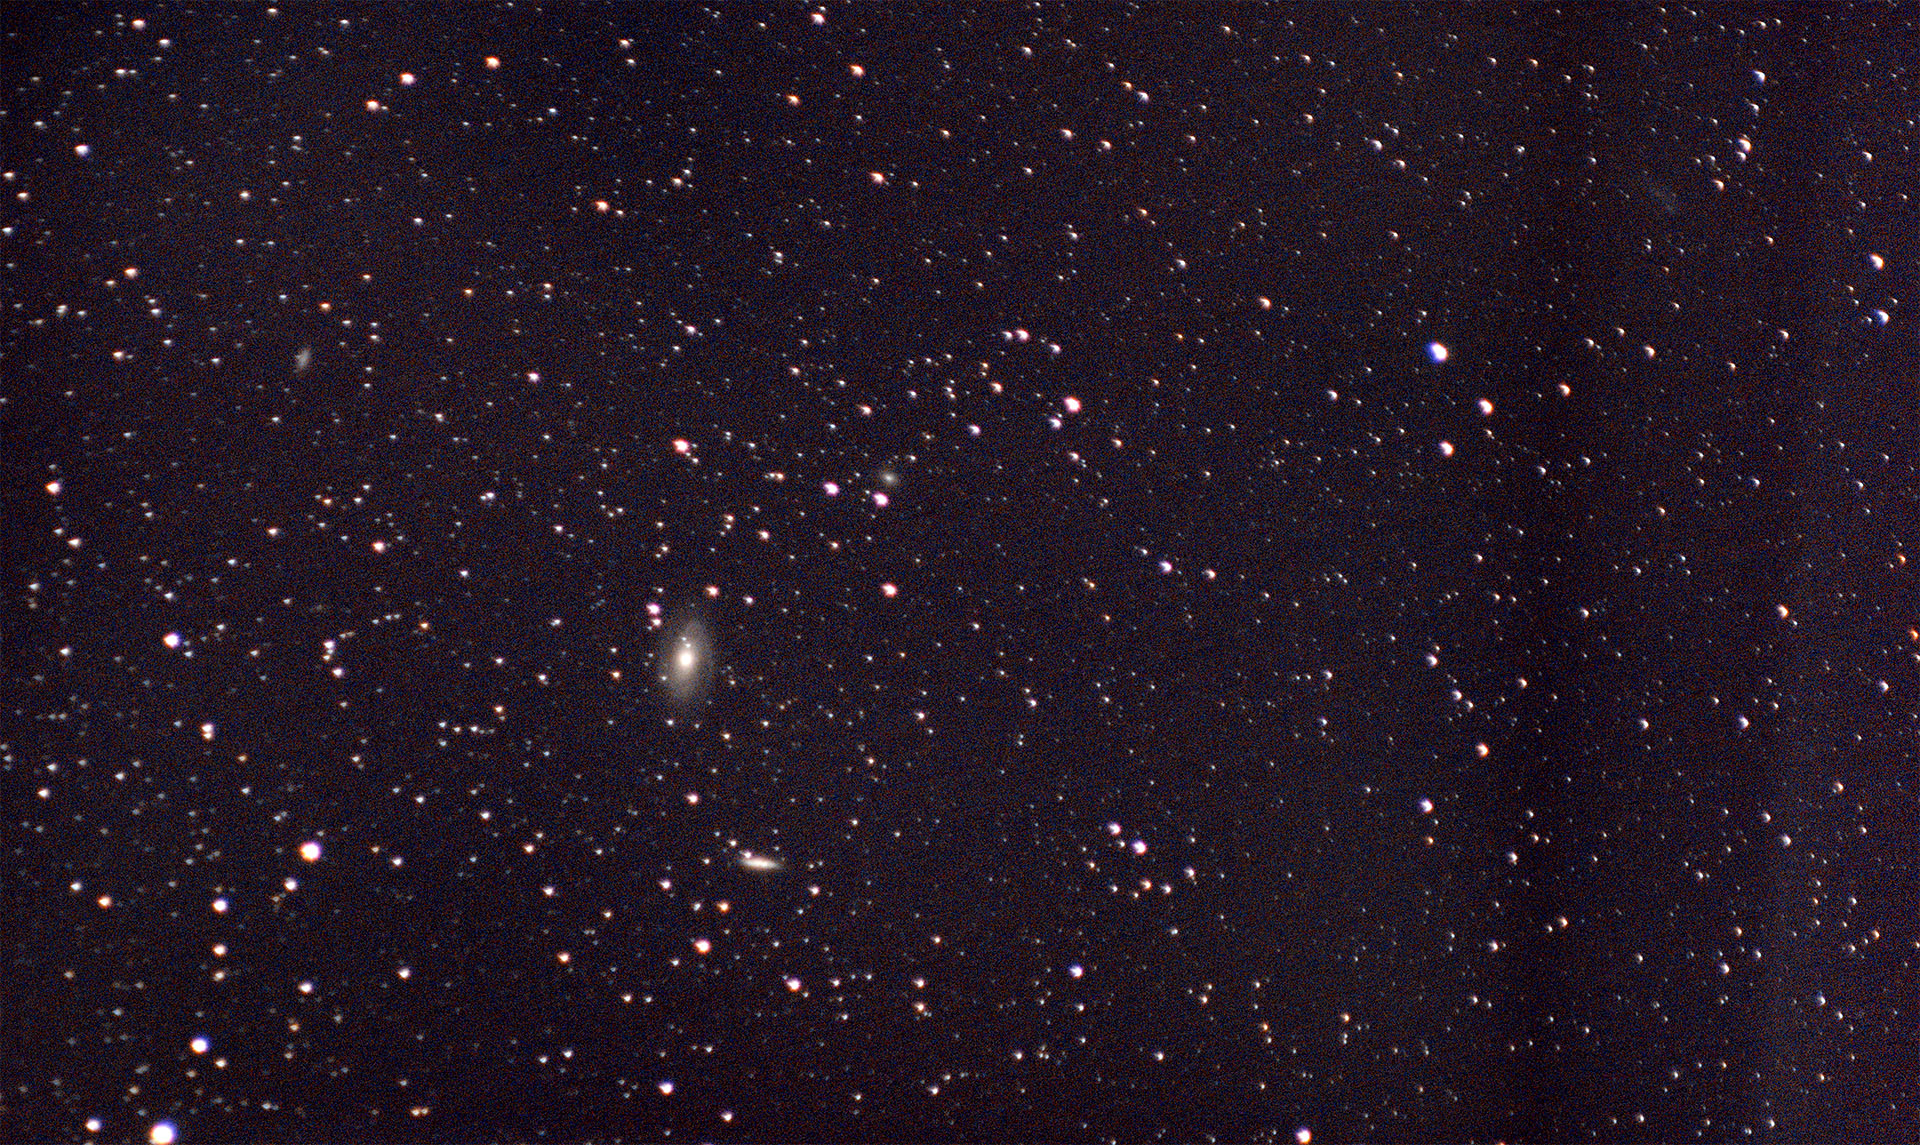 Messier 81 & 82